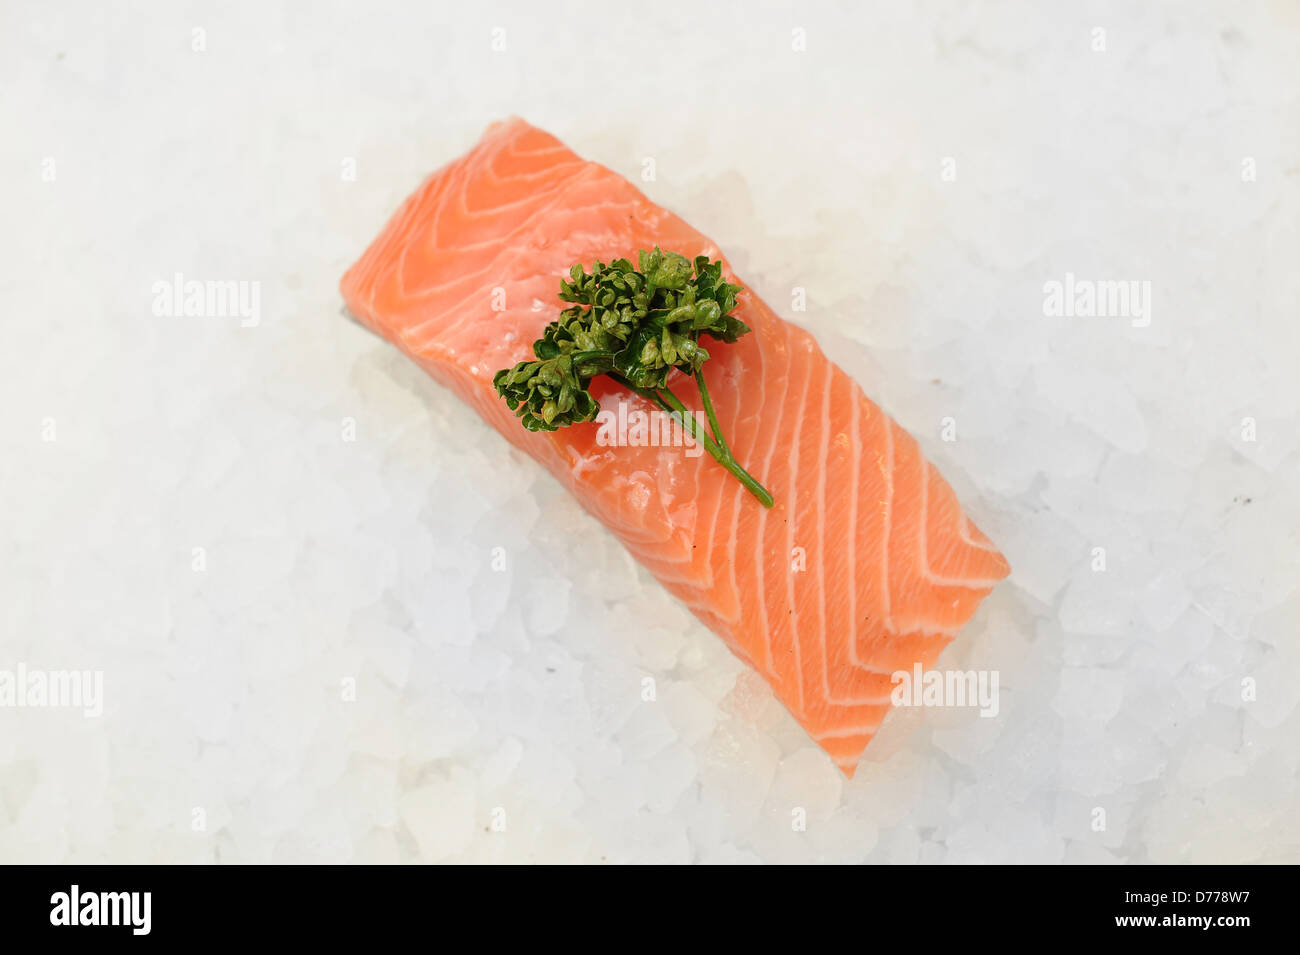 salmon fillet Stock Photo